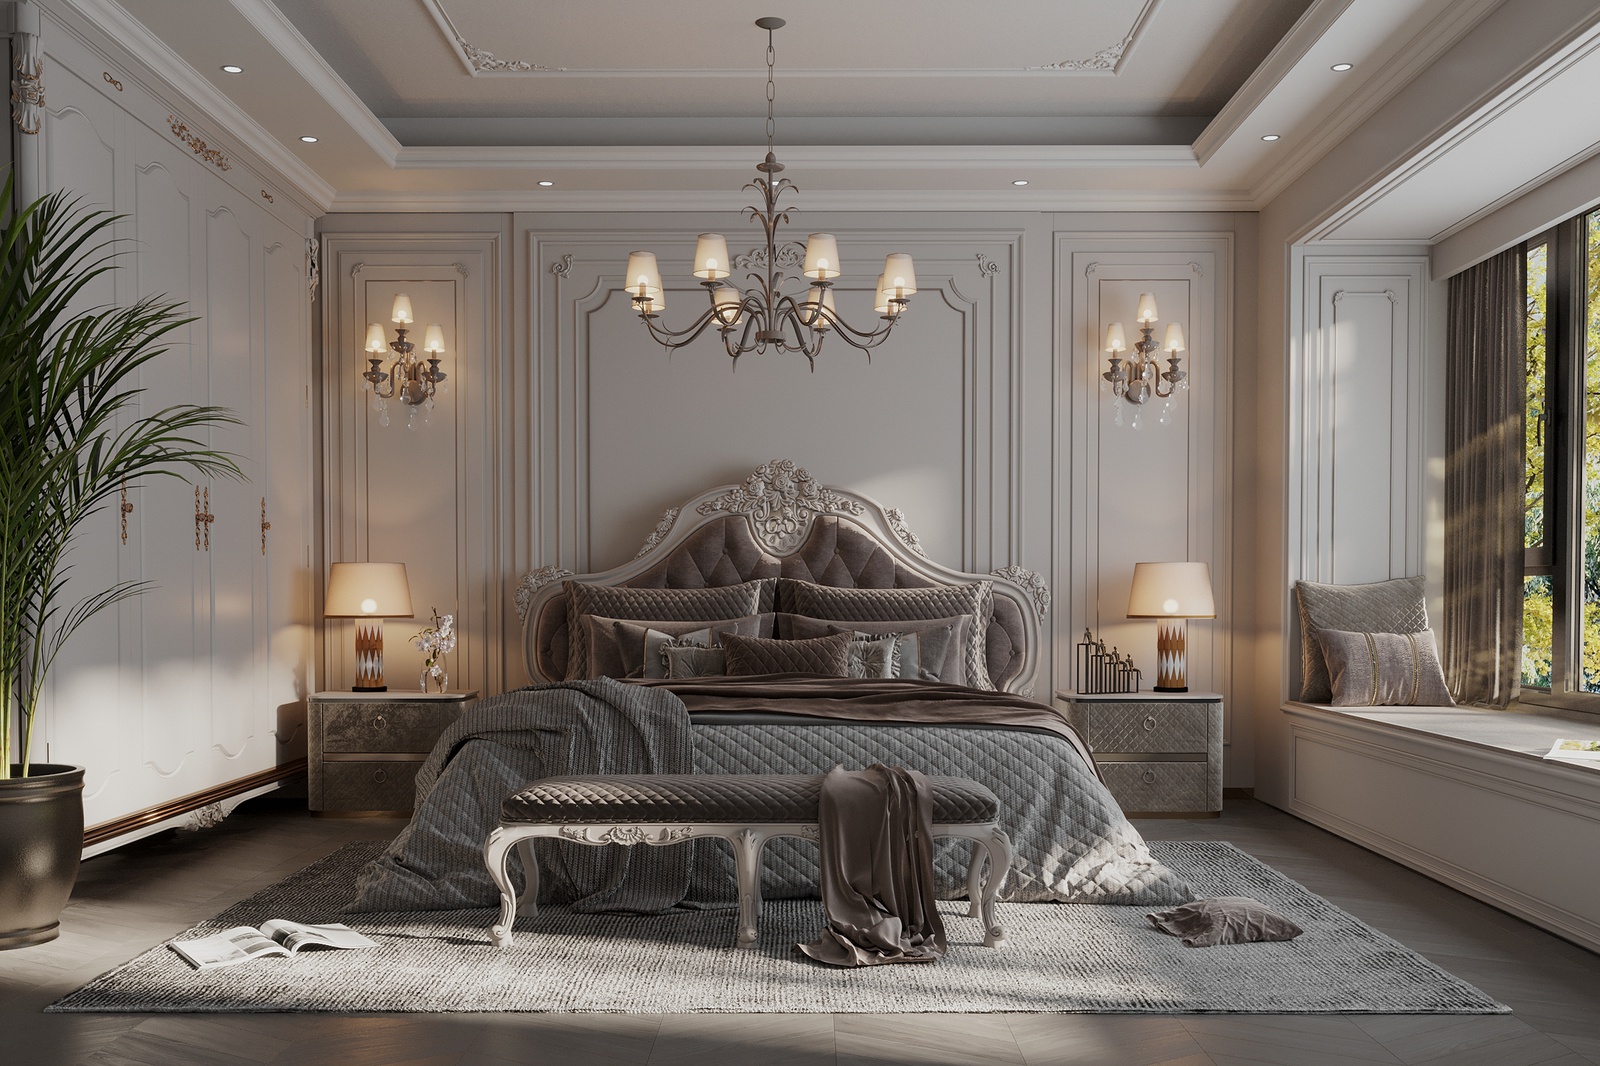 Tổng hợp 20 mẫu thiết kế nội thất phòng ngủ tân cổ điển đẹp, sang trọng xu hướng 2022